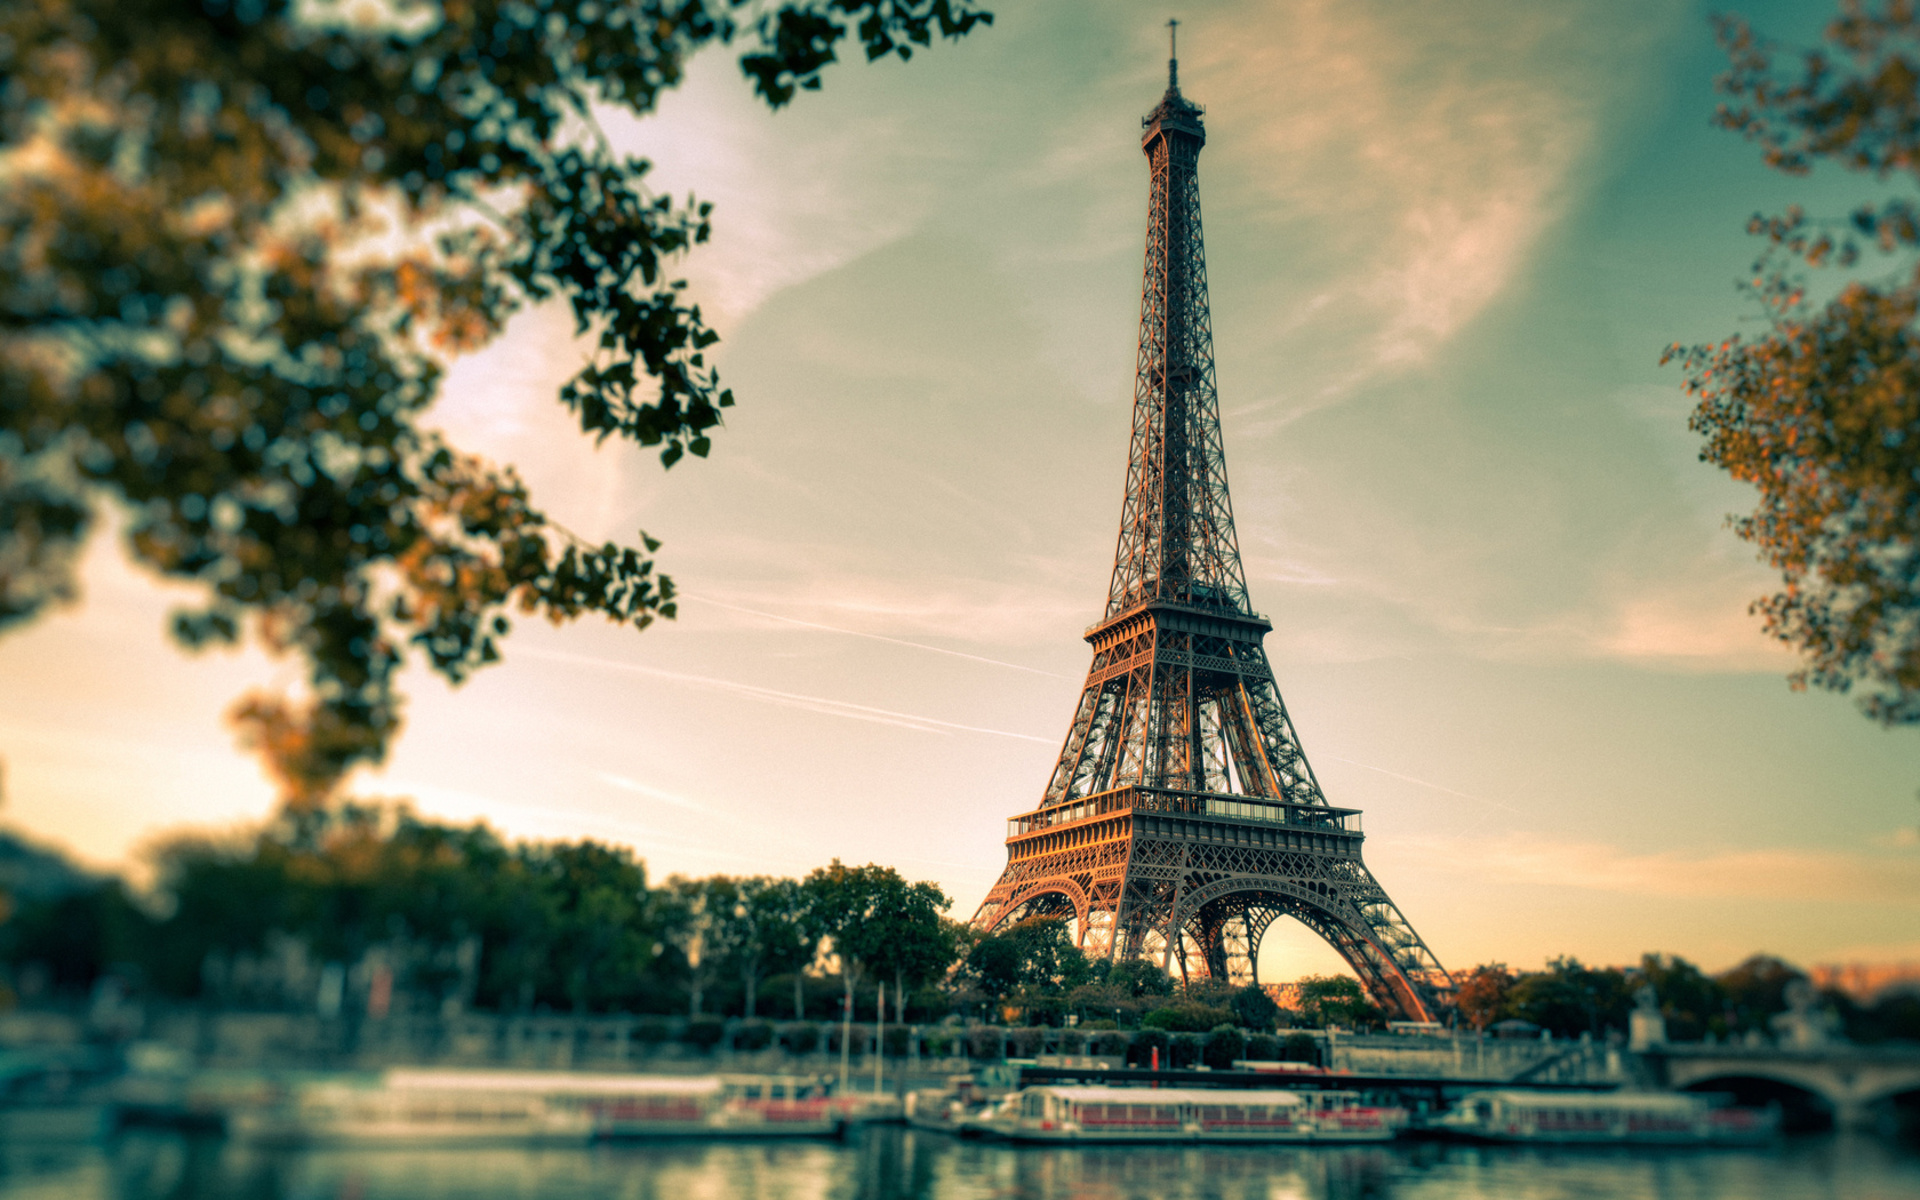 Bức ảnh chụp từ góc độ thấp của Tháp Eiffel sẽ khiến bạn say đắm với khung cảnh đẹp tuyệt vời này. Hình nền Eiffel Tower HD độc đáo này sẽ tô điểm cho bộ sưu tập của bạn và mang đến cho bạn cảm giác tiện ích và hấp dẫn khi sử dụng máy tính.